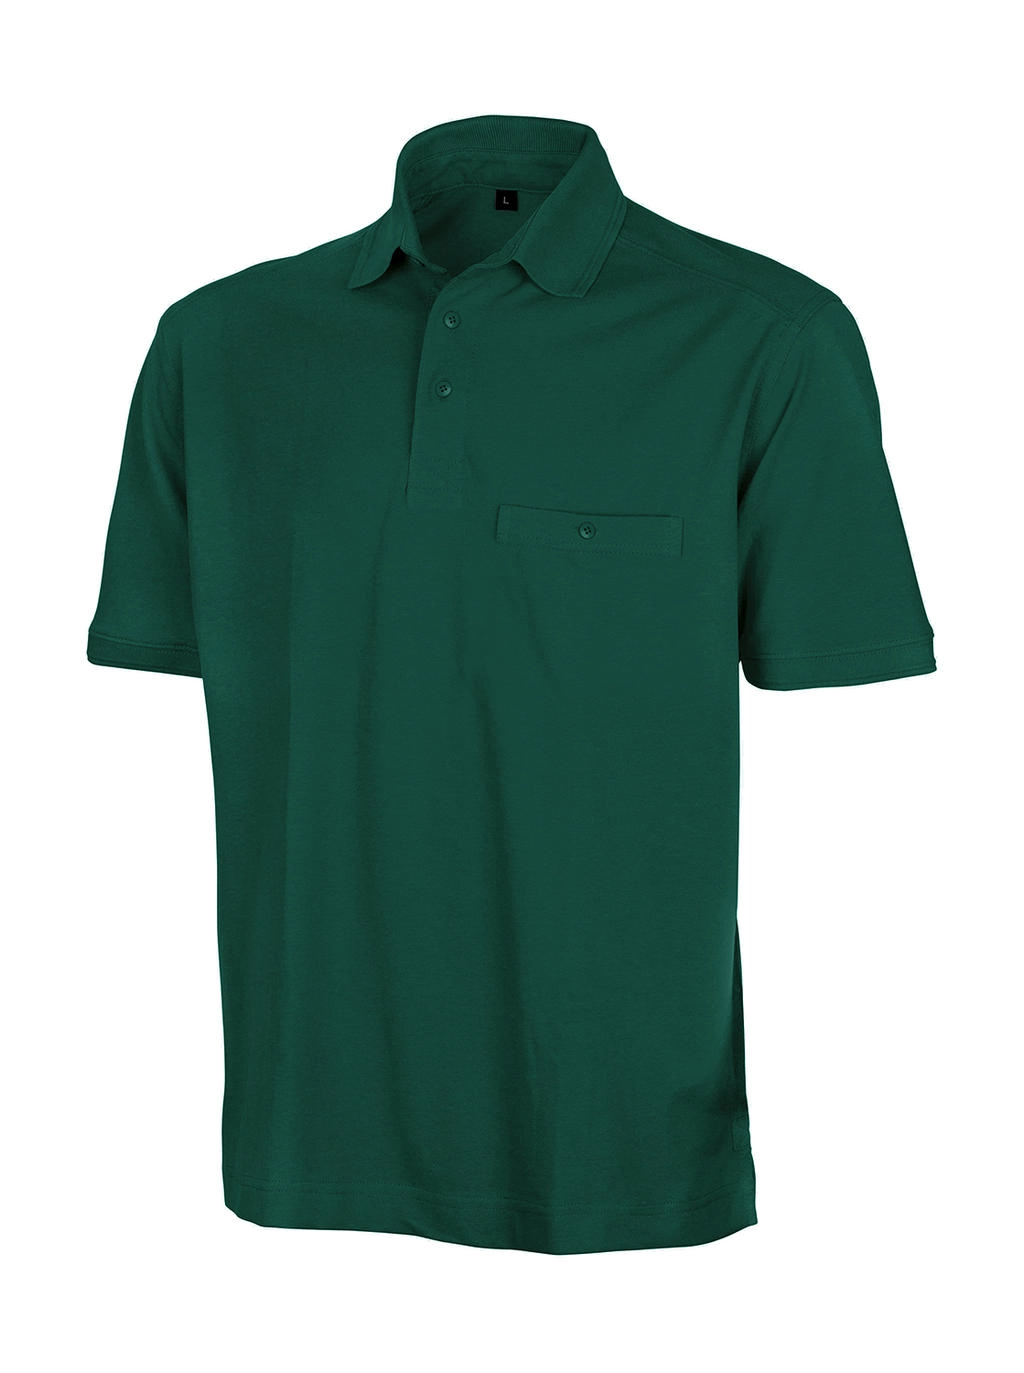 Apex Polo Shirt zum Besticken und Bedrucken in der Farbe Bottle Green mit Ihren Logo, Schriftzug oder Motiv.